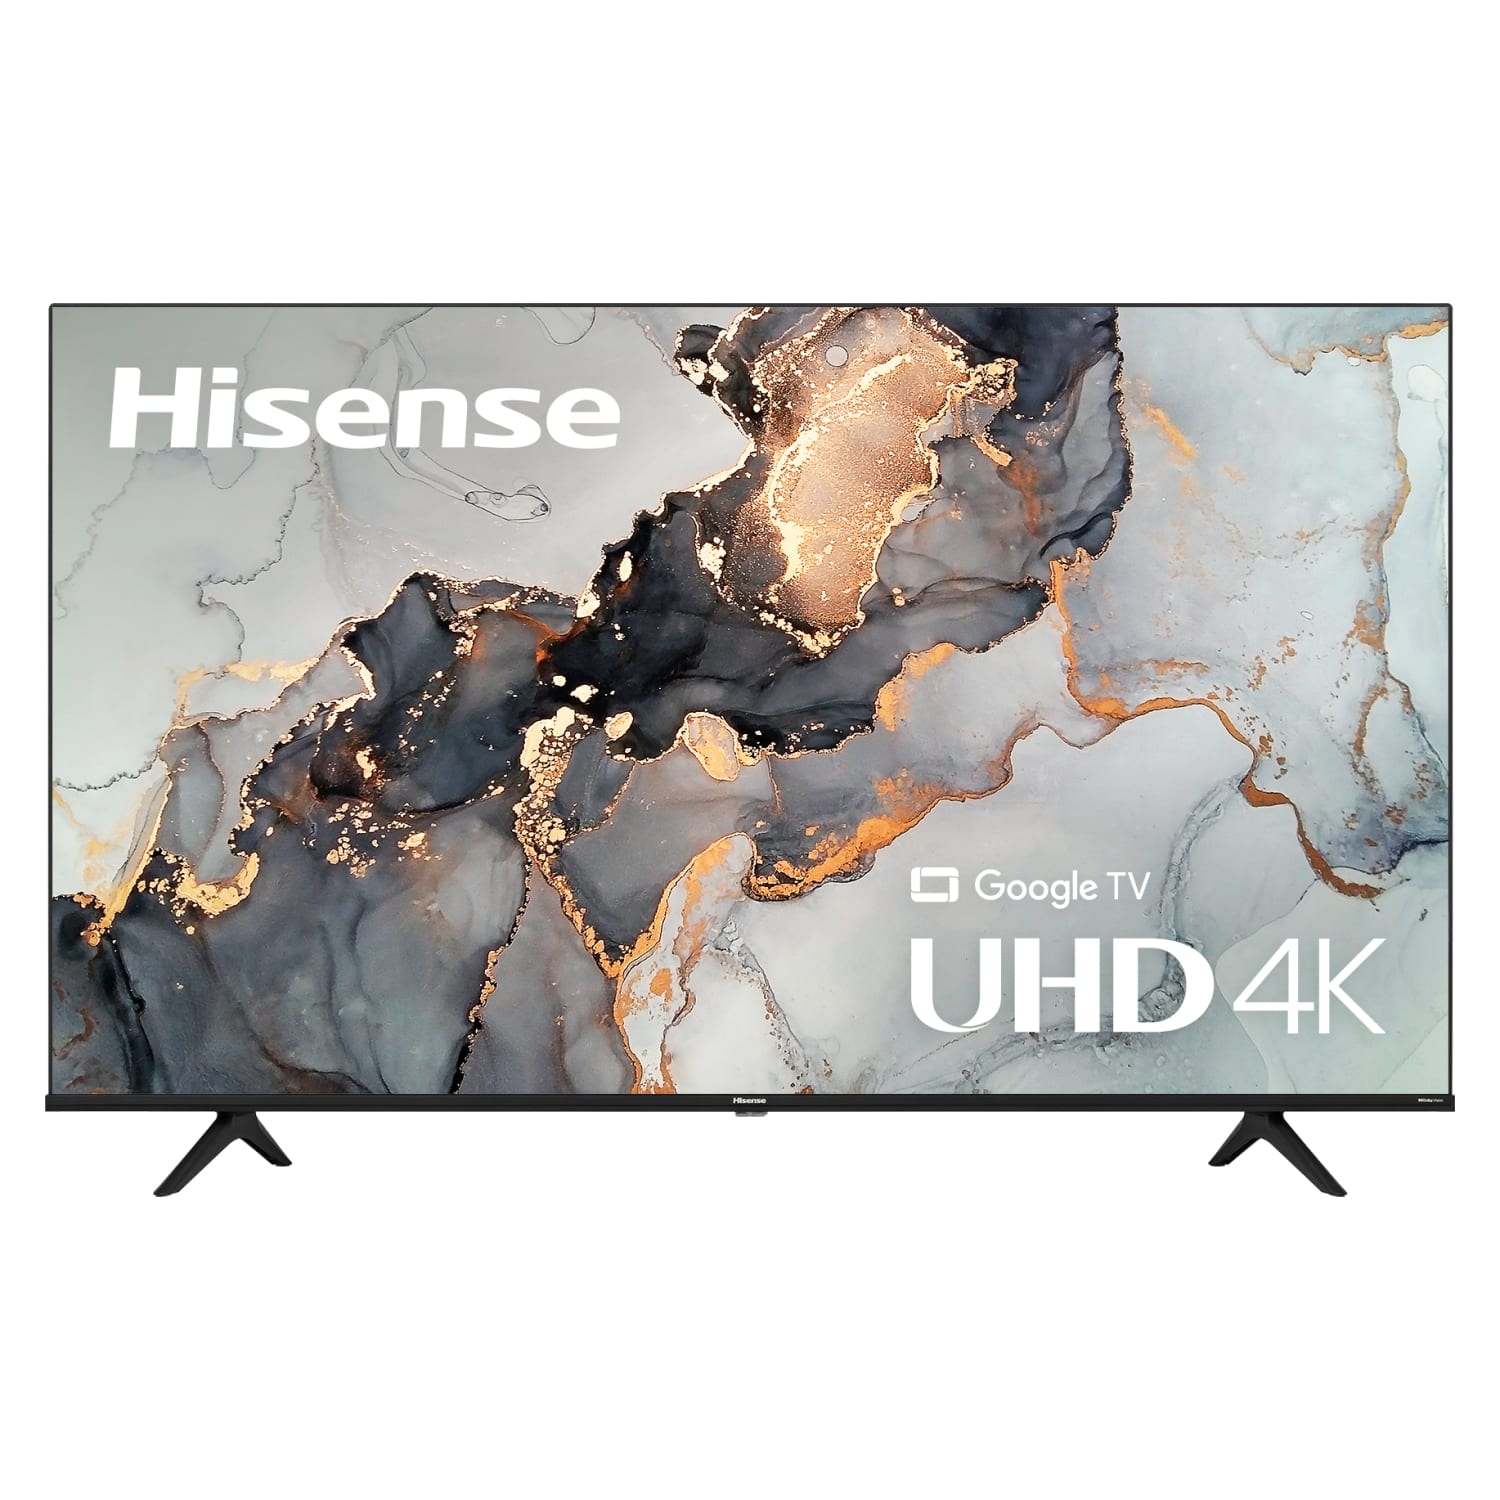 Buy Hisense 75” 4K UHD Smart Google TV | Conn's HomePlus